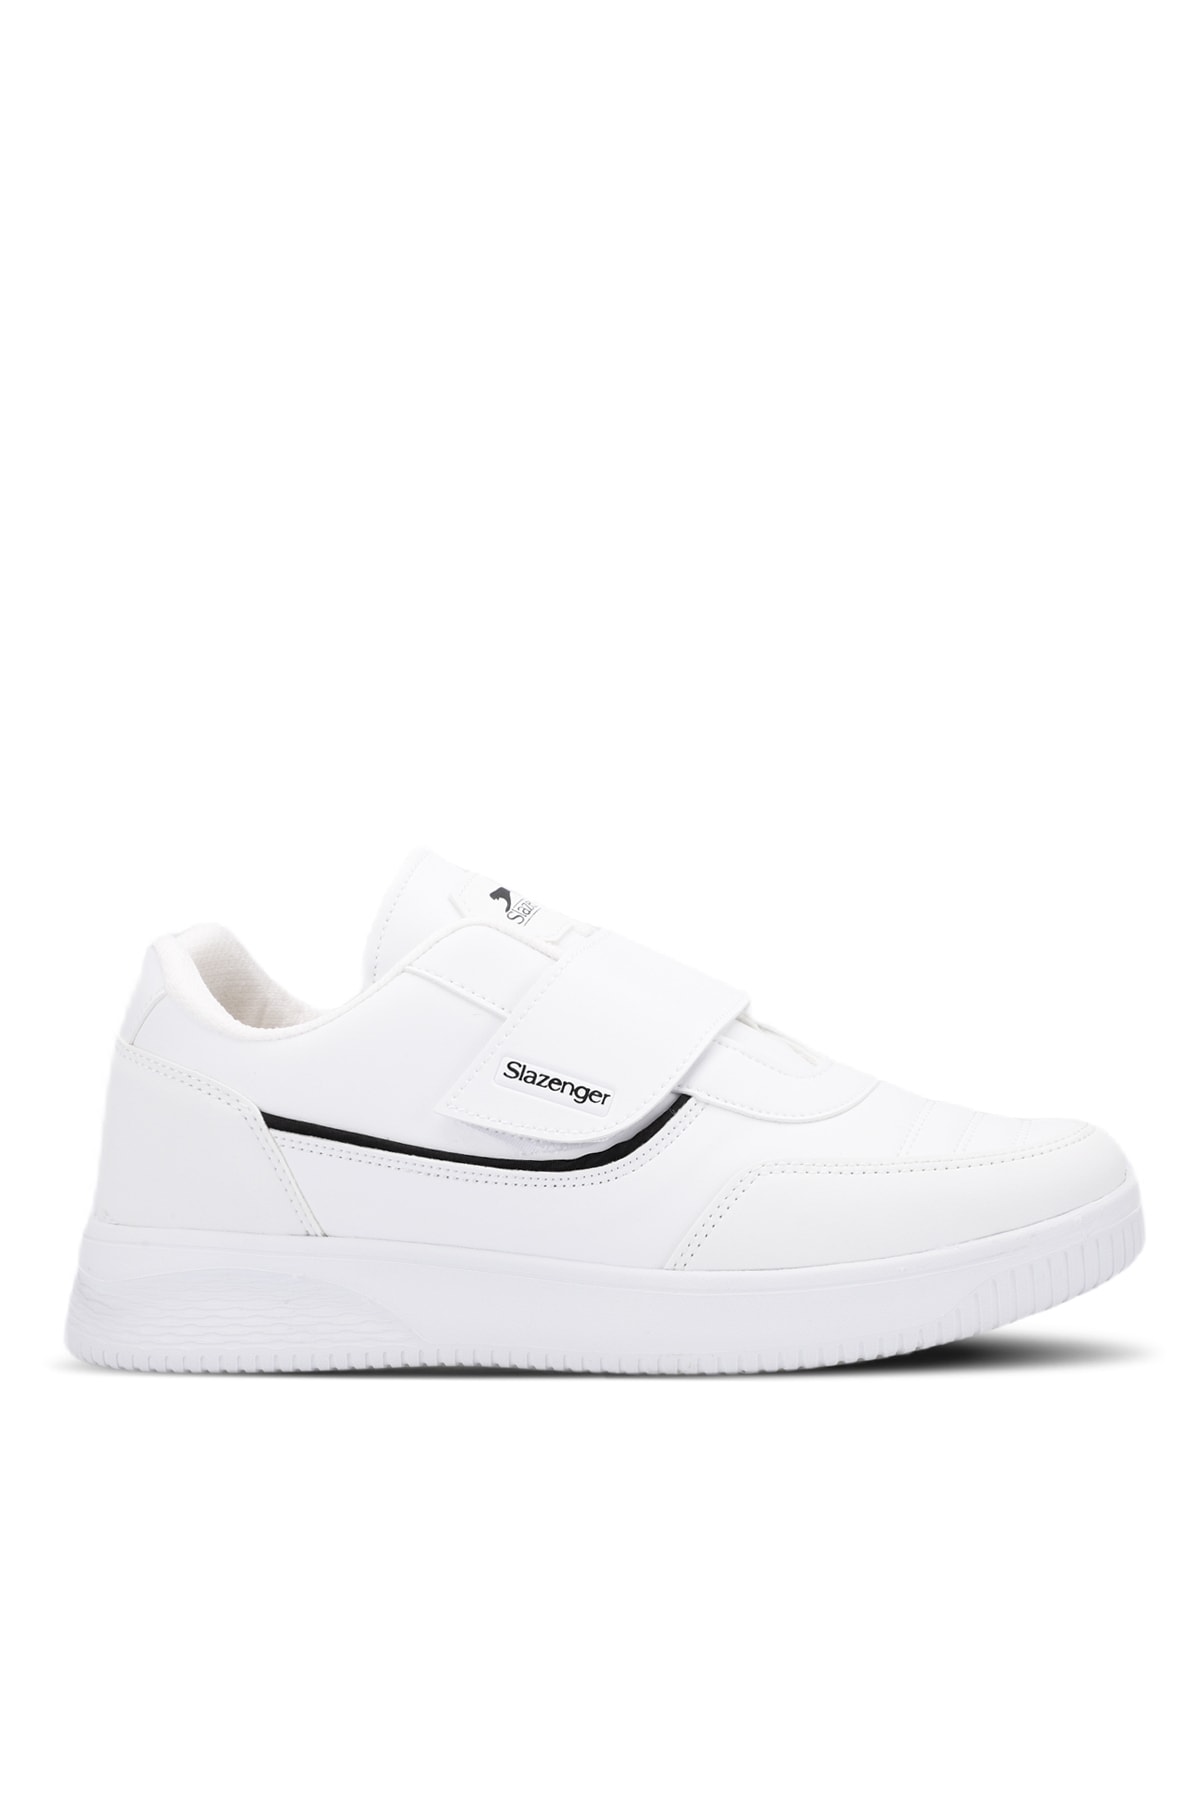 Levně Slazenger MALL I Sneaker Men's Shoes White